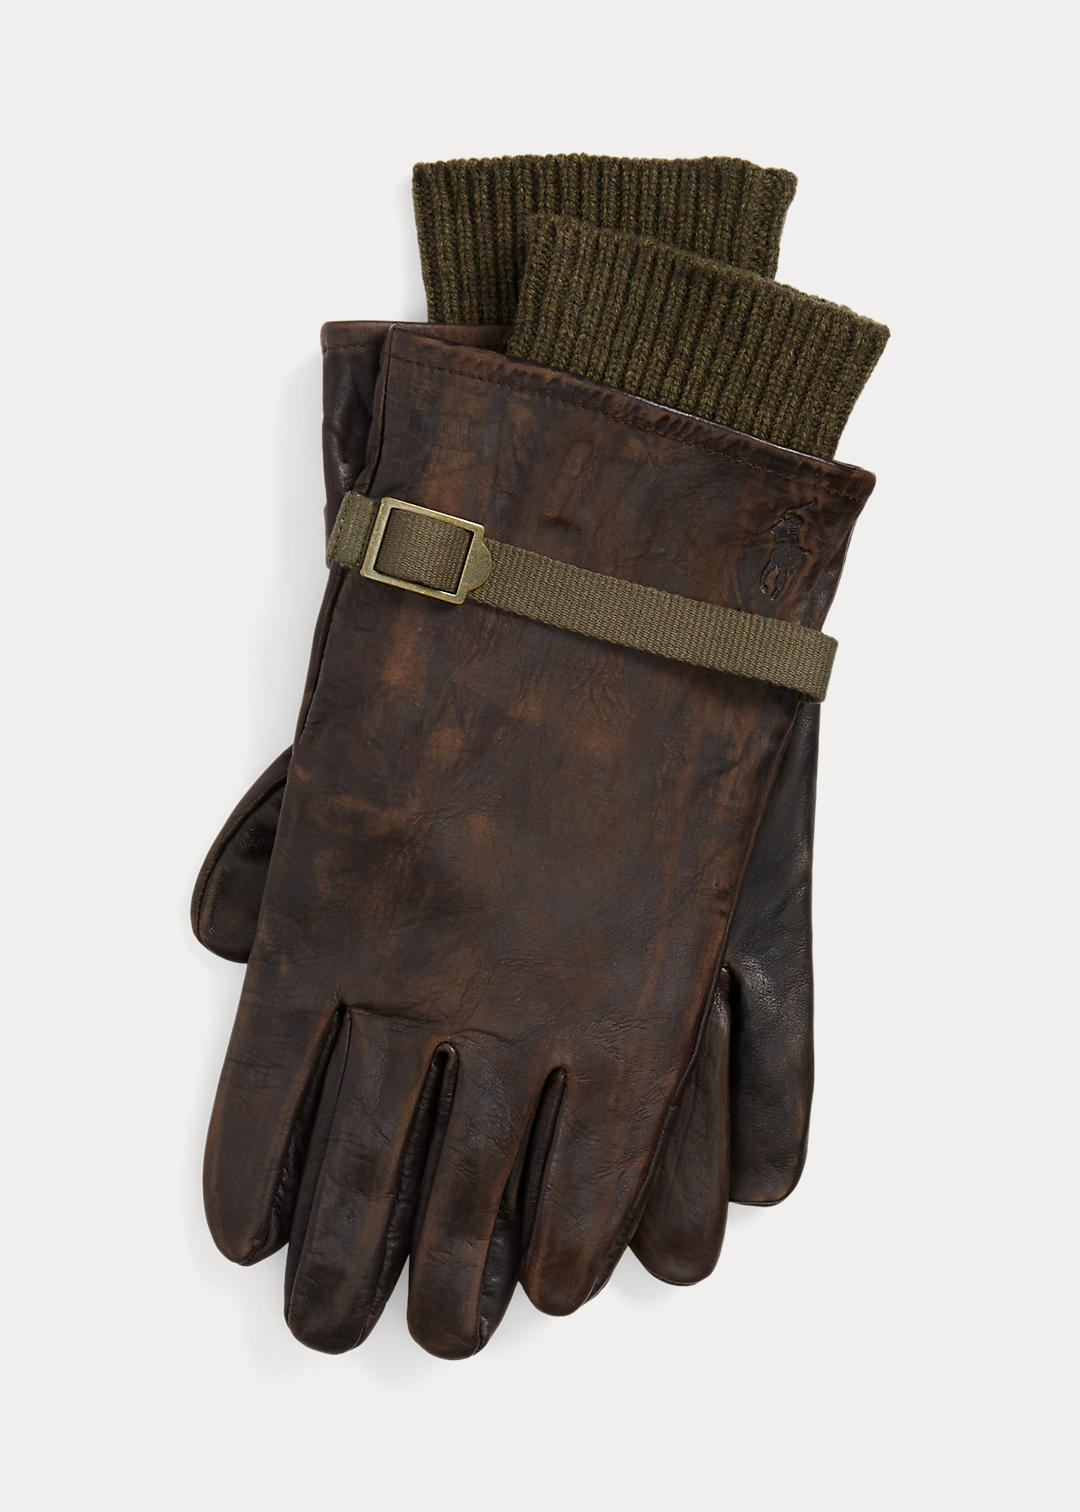 2-in-1 Sheepskin & Merino Wool Gloves